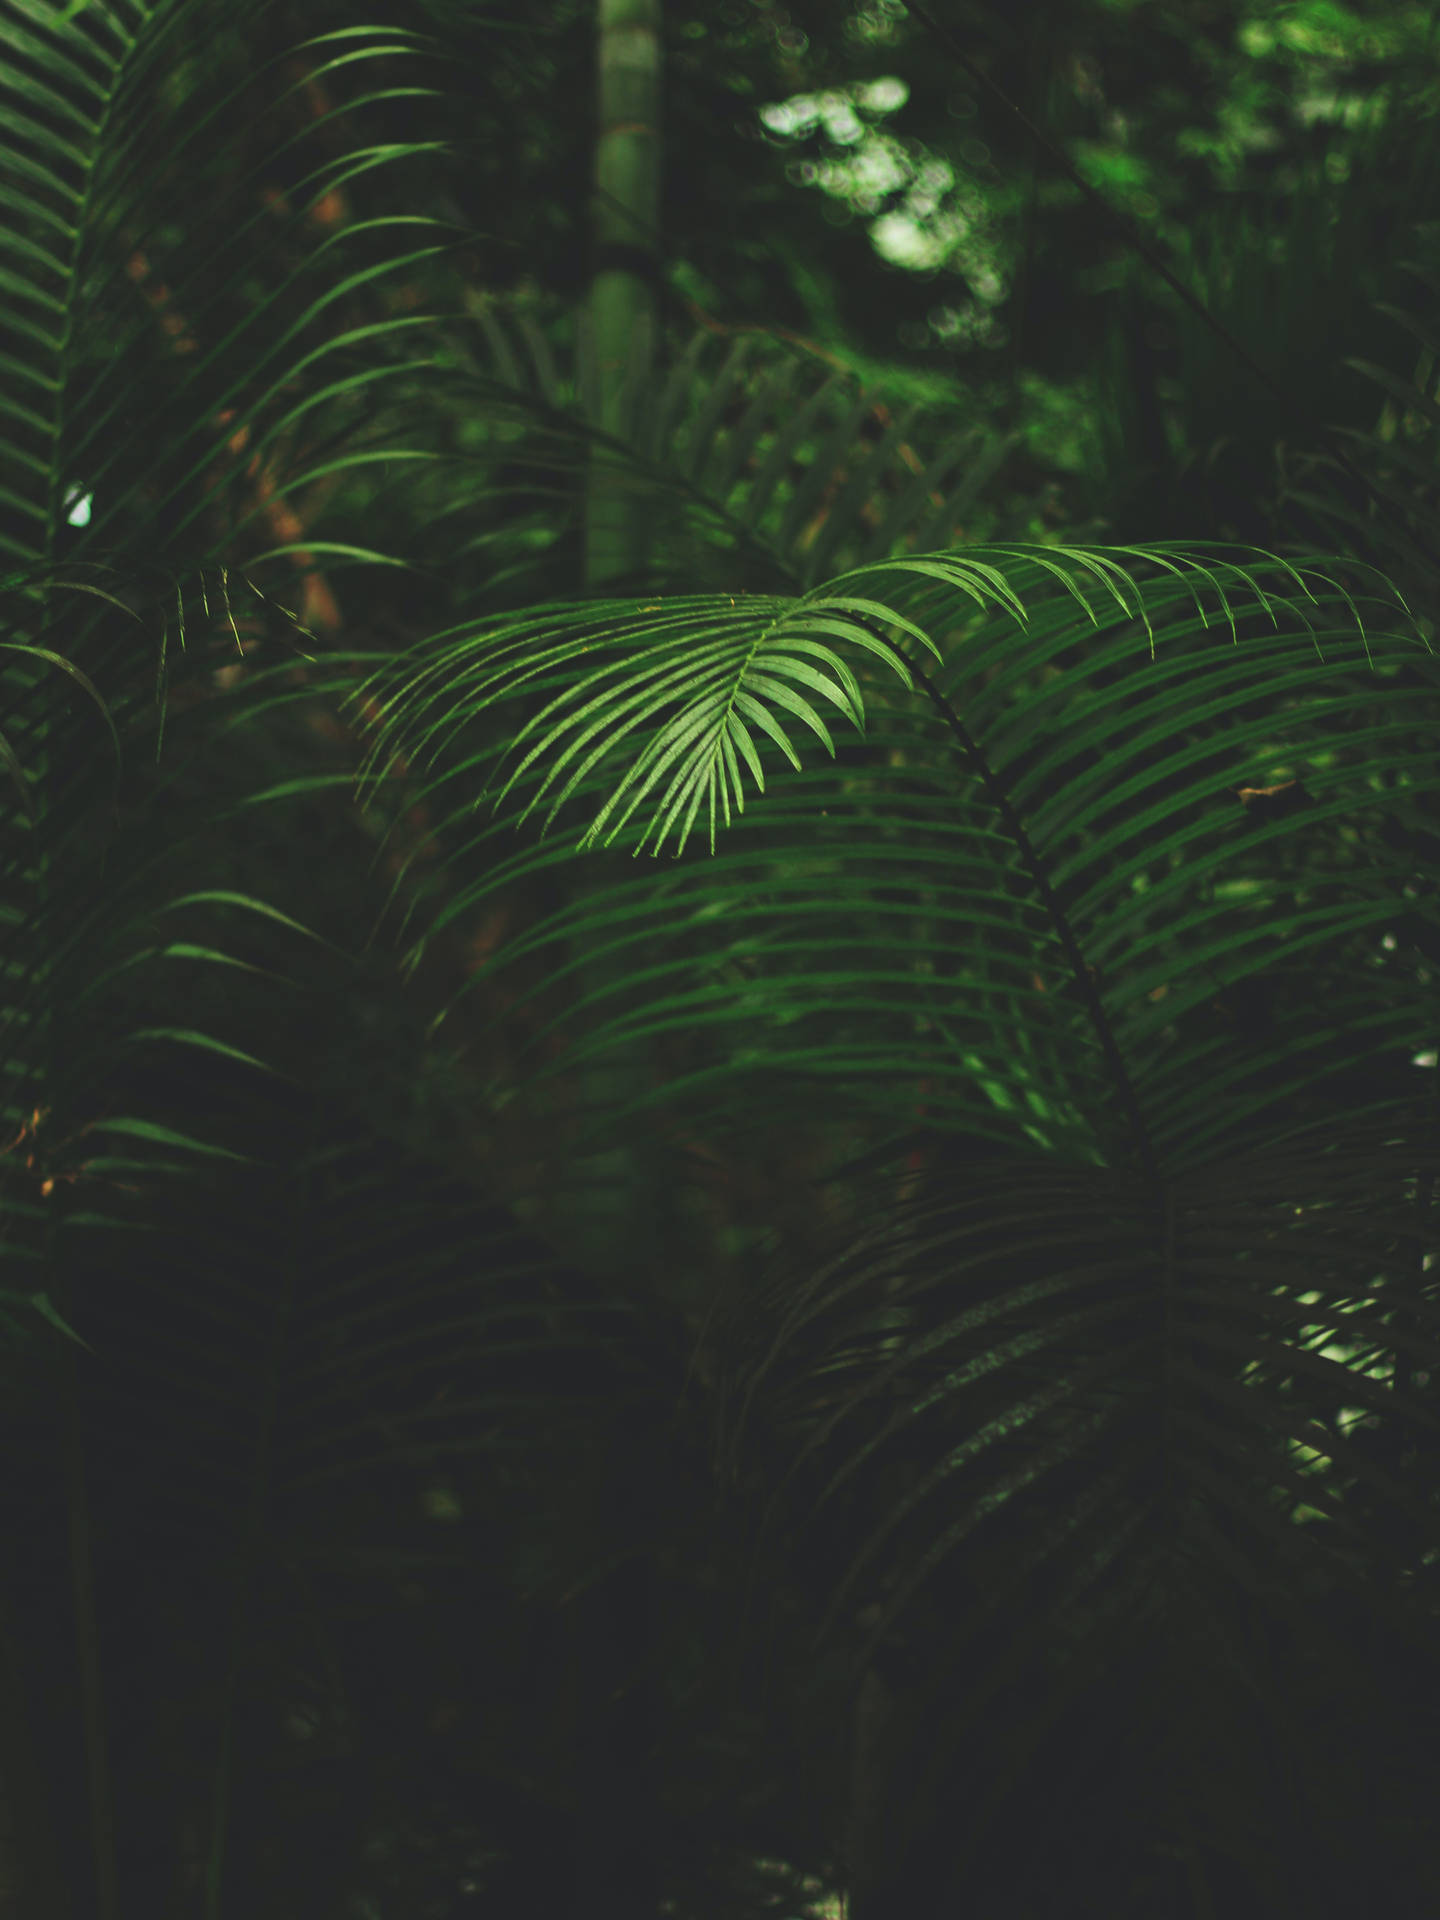 Fondode Pantalla Oscuro De Plantas En El Bosque Para Iphone. Fondo de pantalla